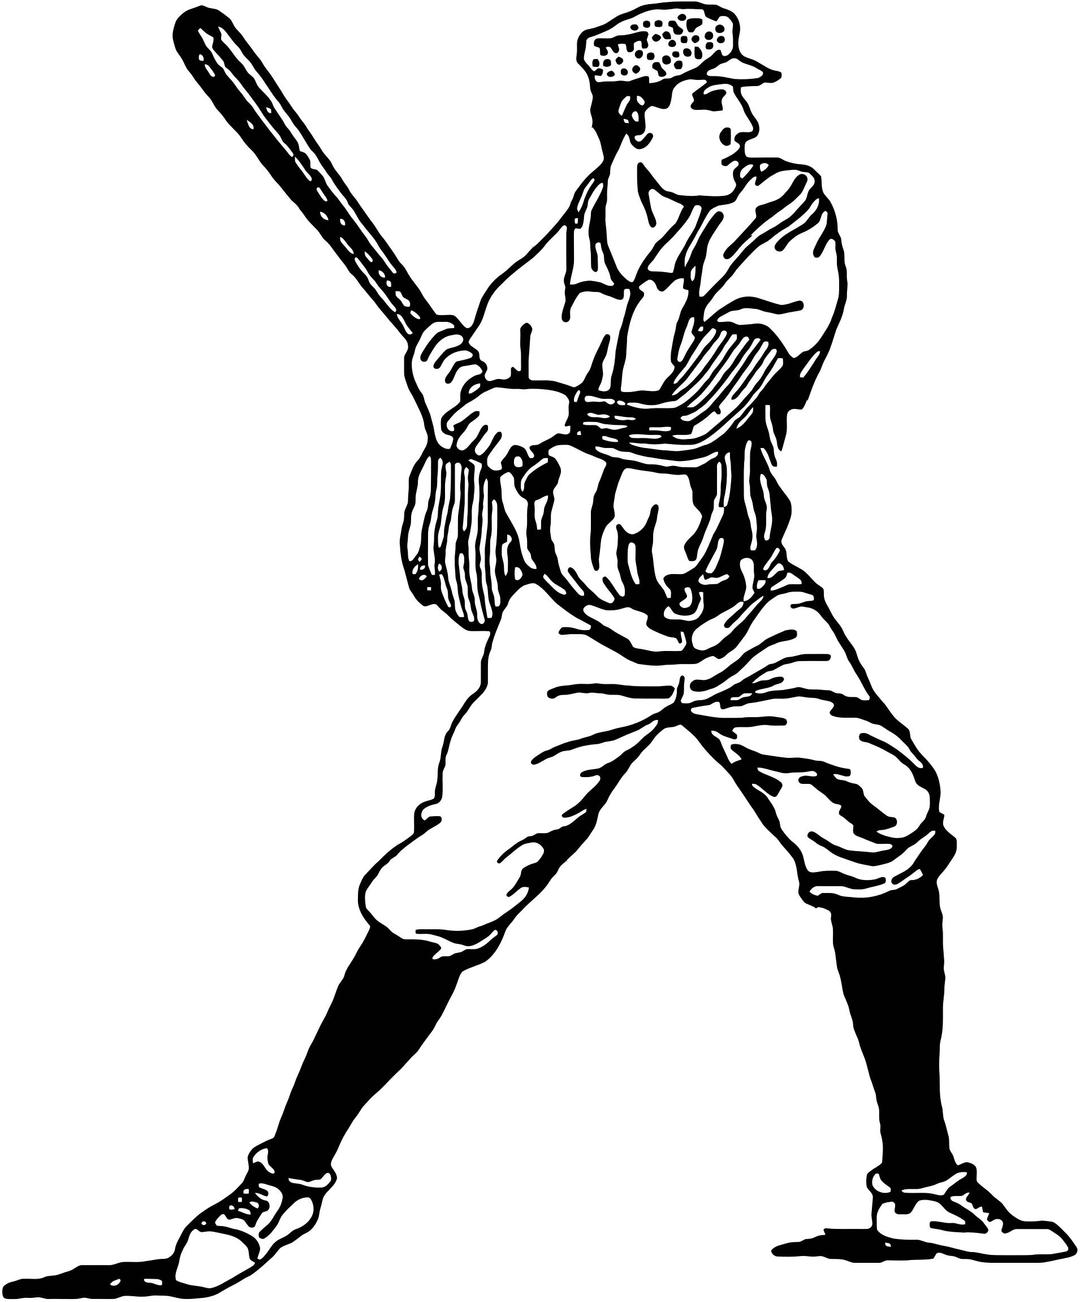 Vintage Baseball Player Illustration png transparent